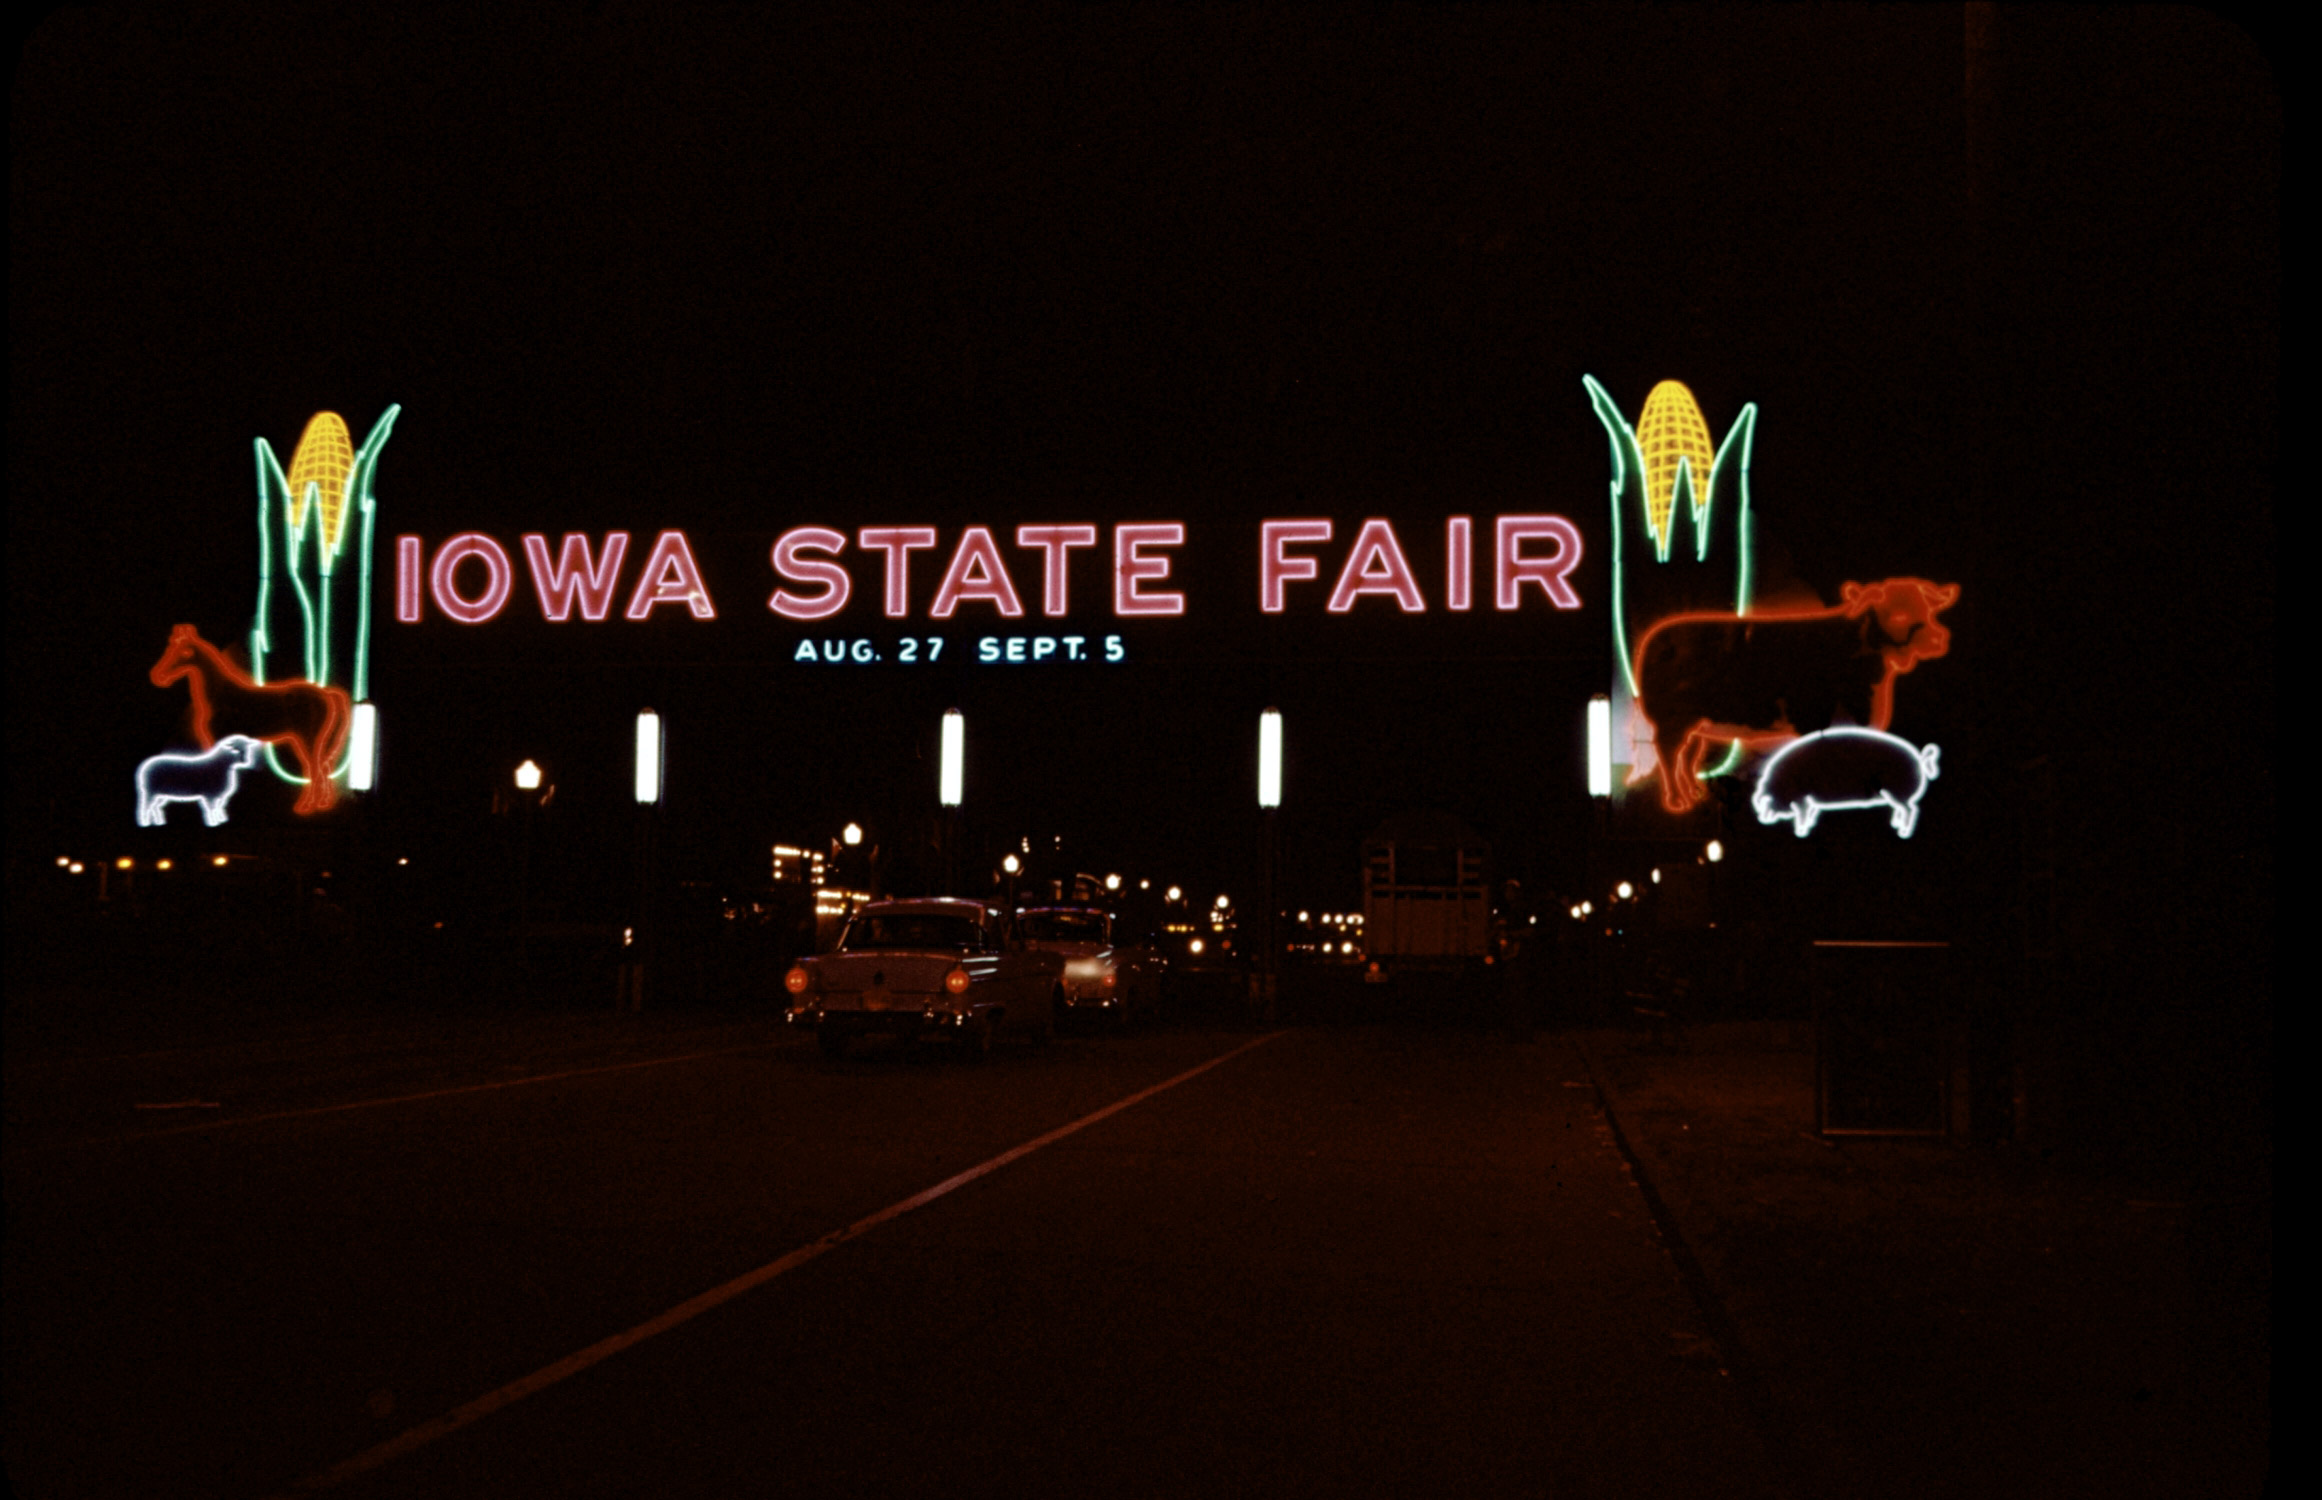 Iowa State Fair 1955